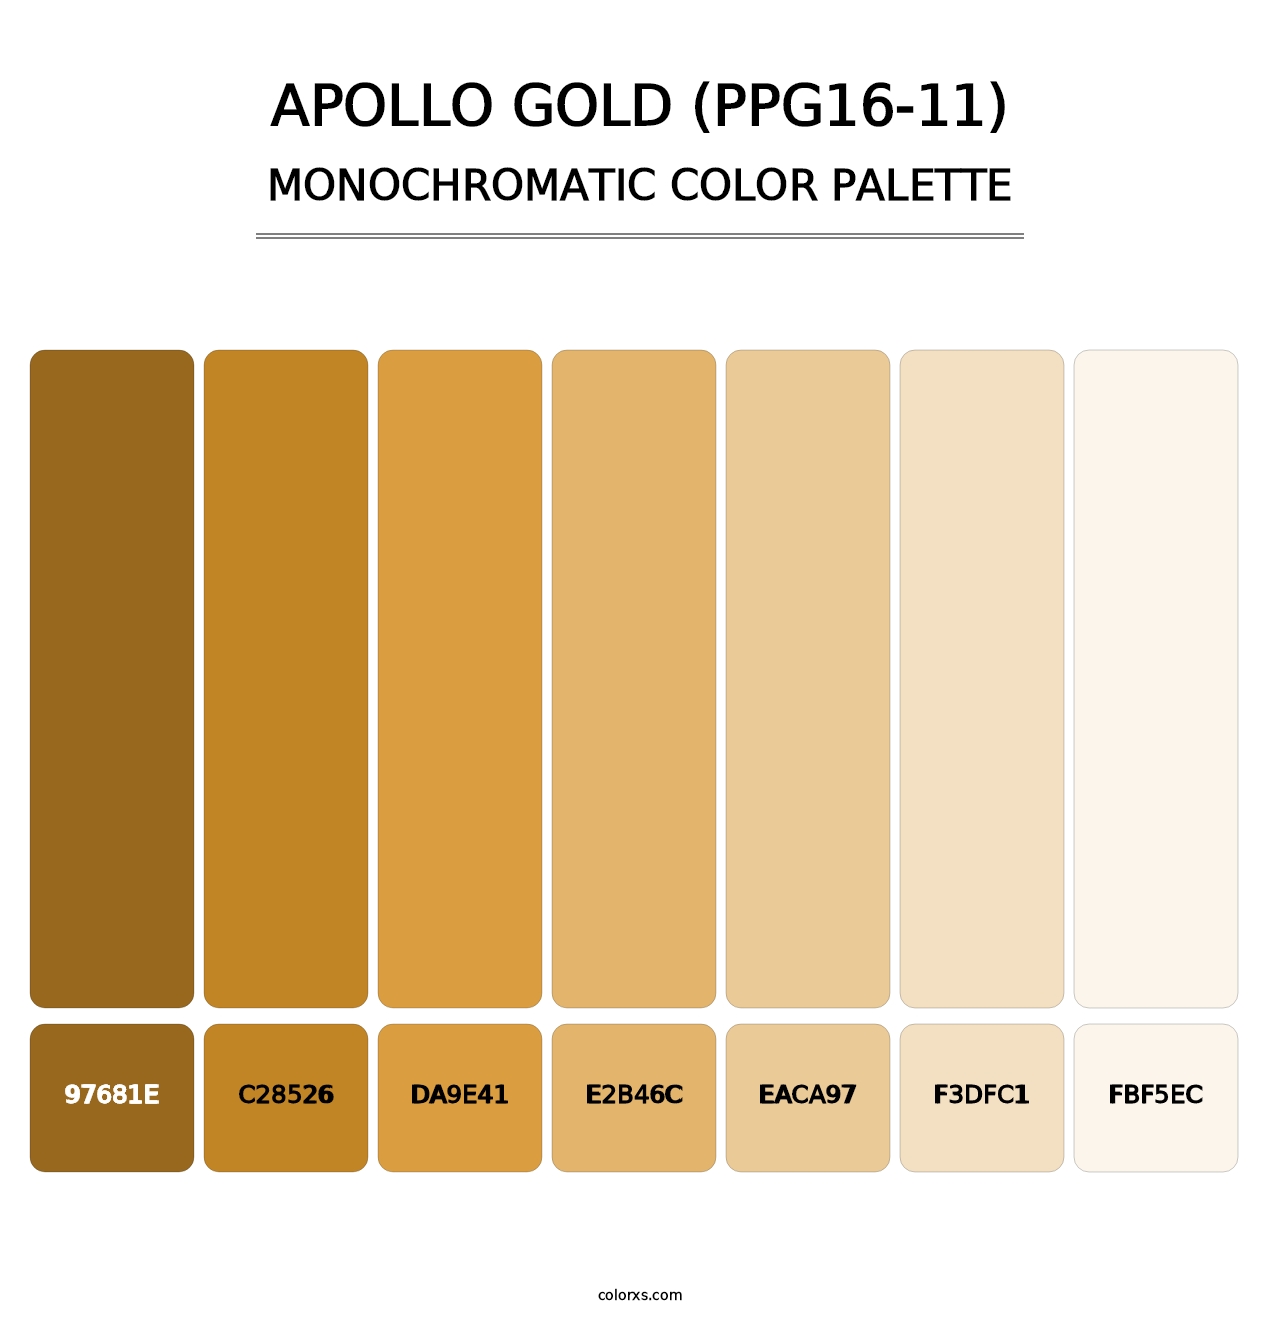 Apollo Gold (PPG16-11) - Monochromatic Color Palette